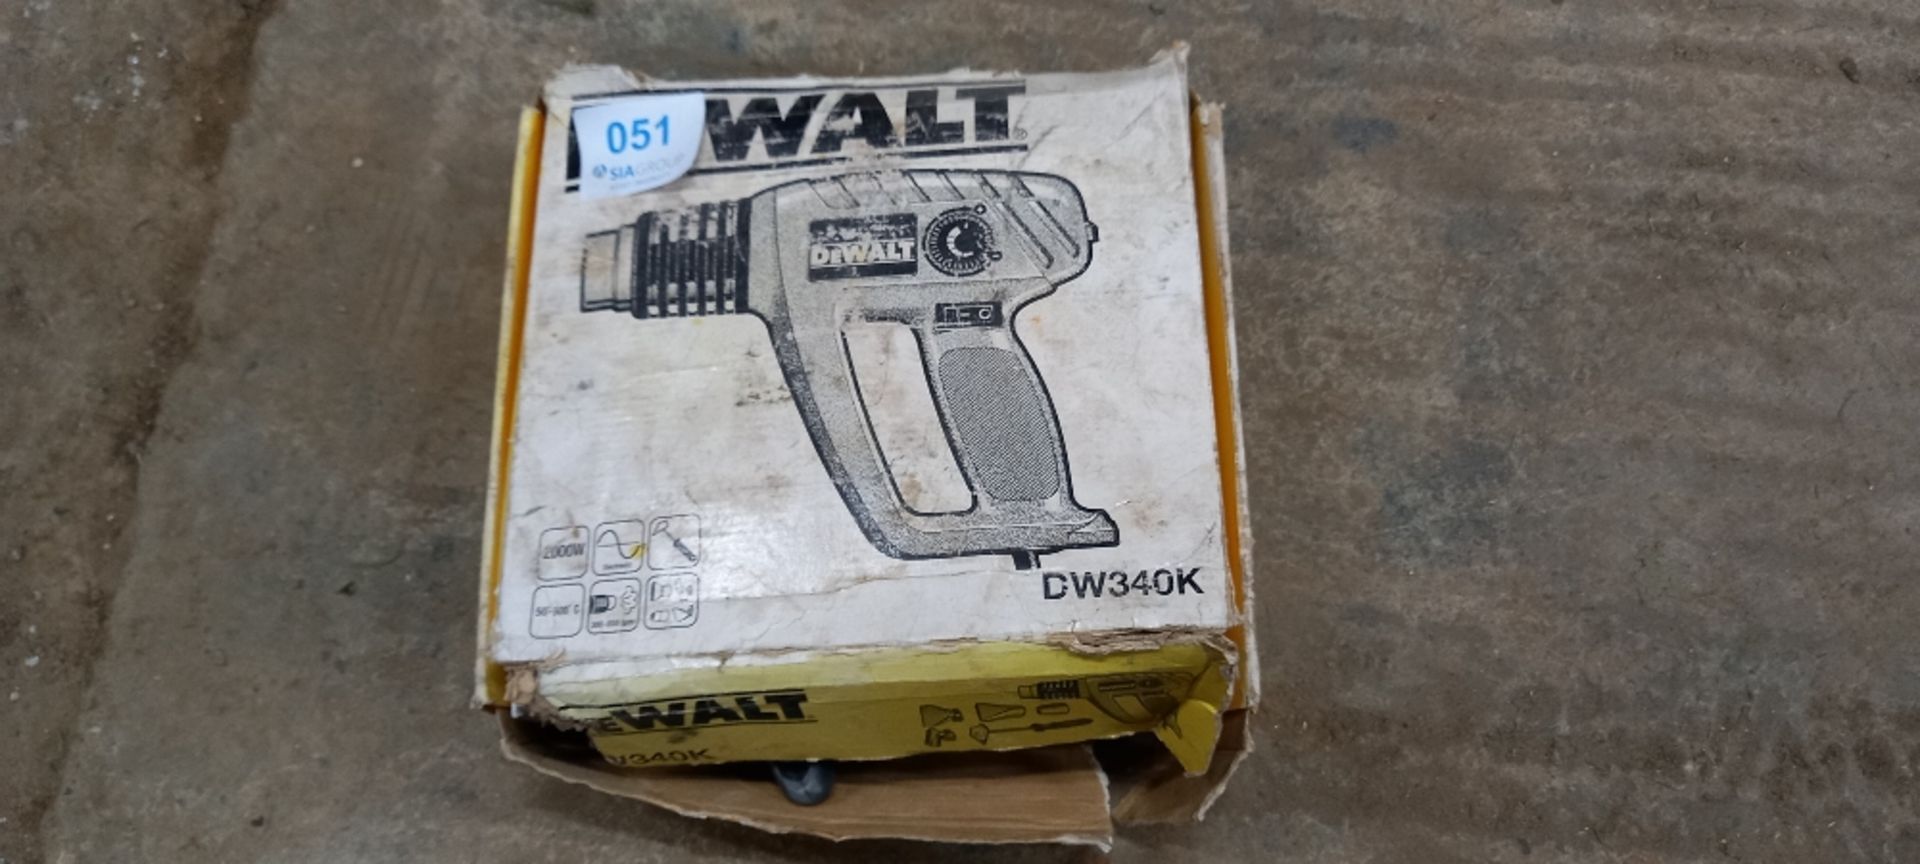 DeWalt DW340K Heat Gun - Image 2 of 2